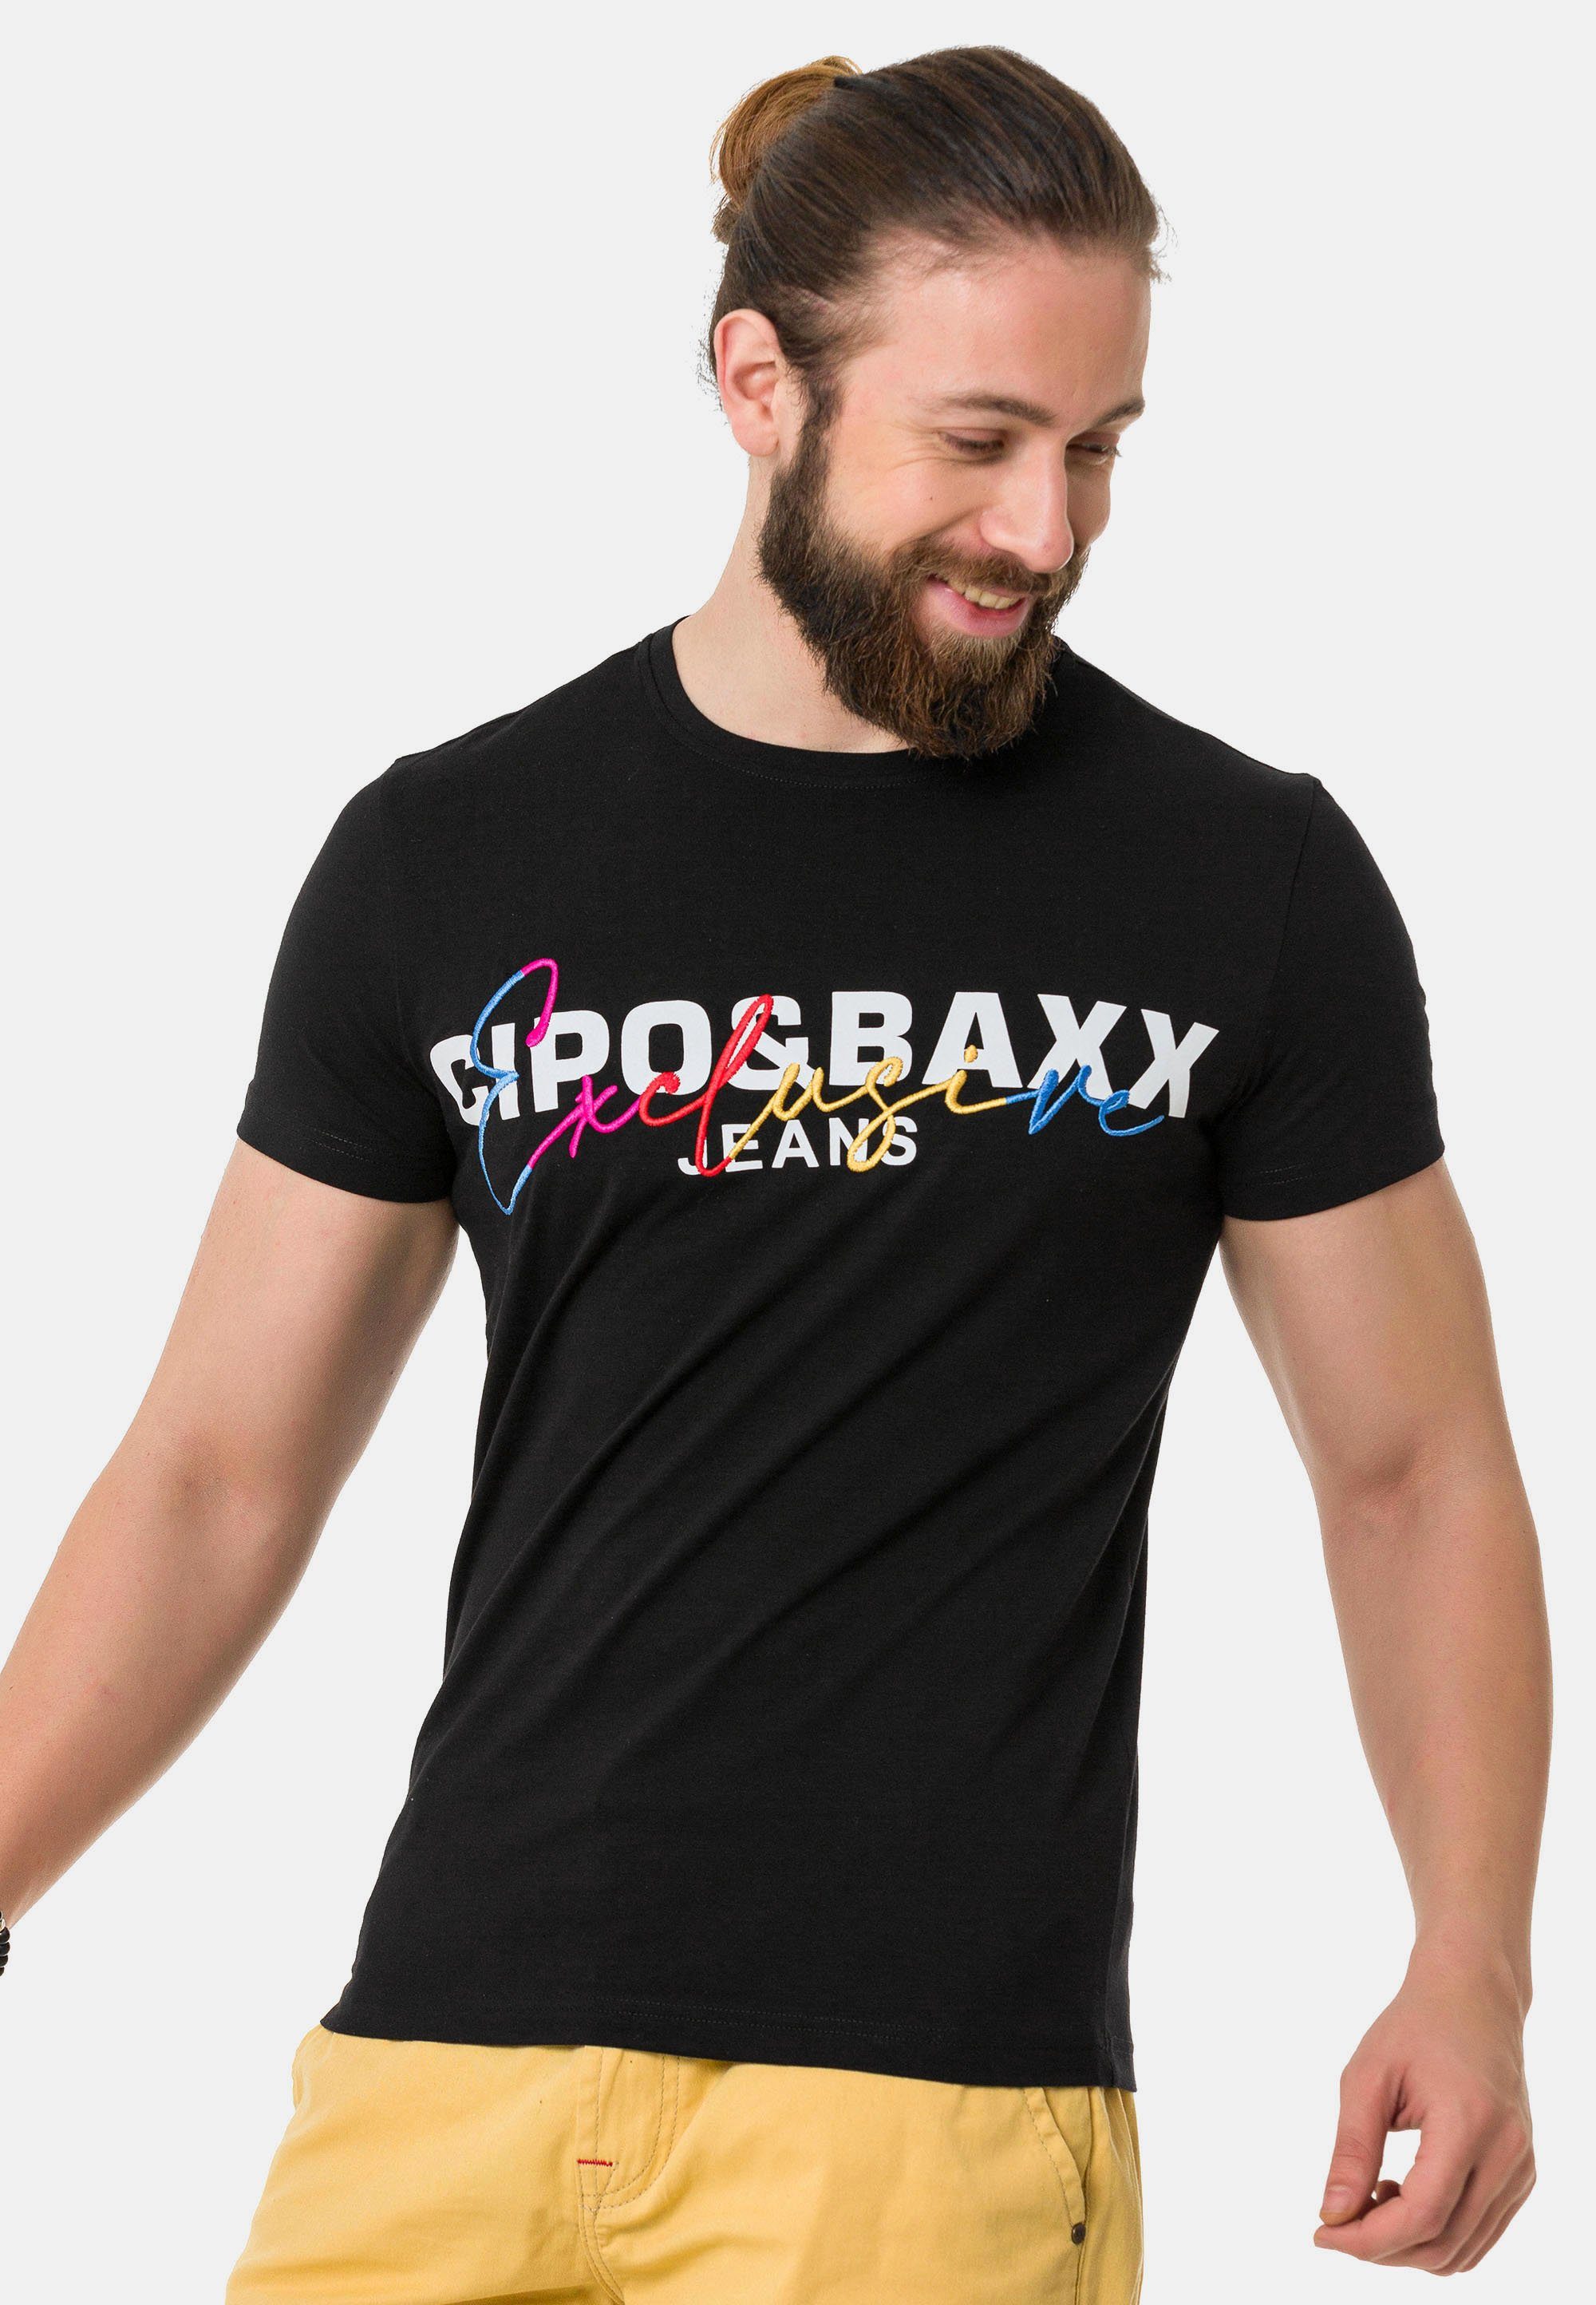 Cipo & mit schwarz Markenprint T-Shirt Baxx